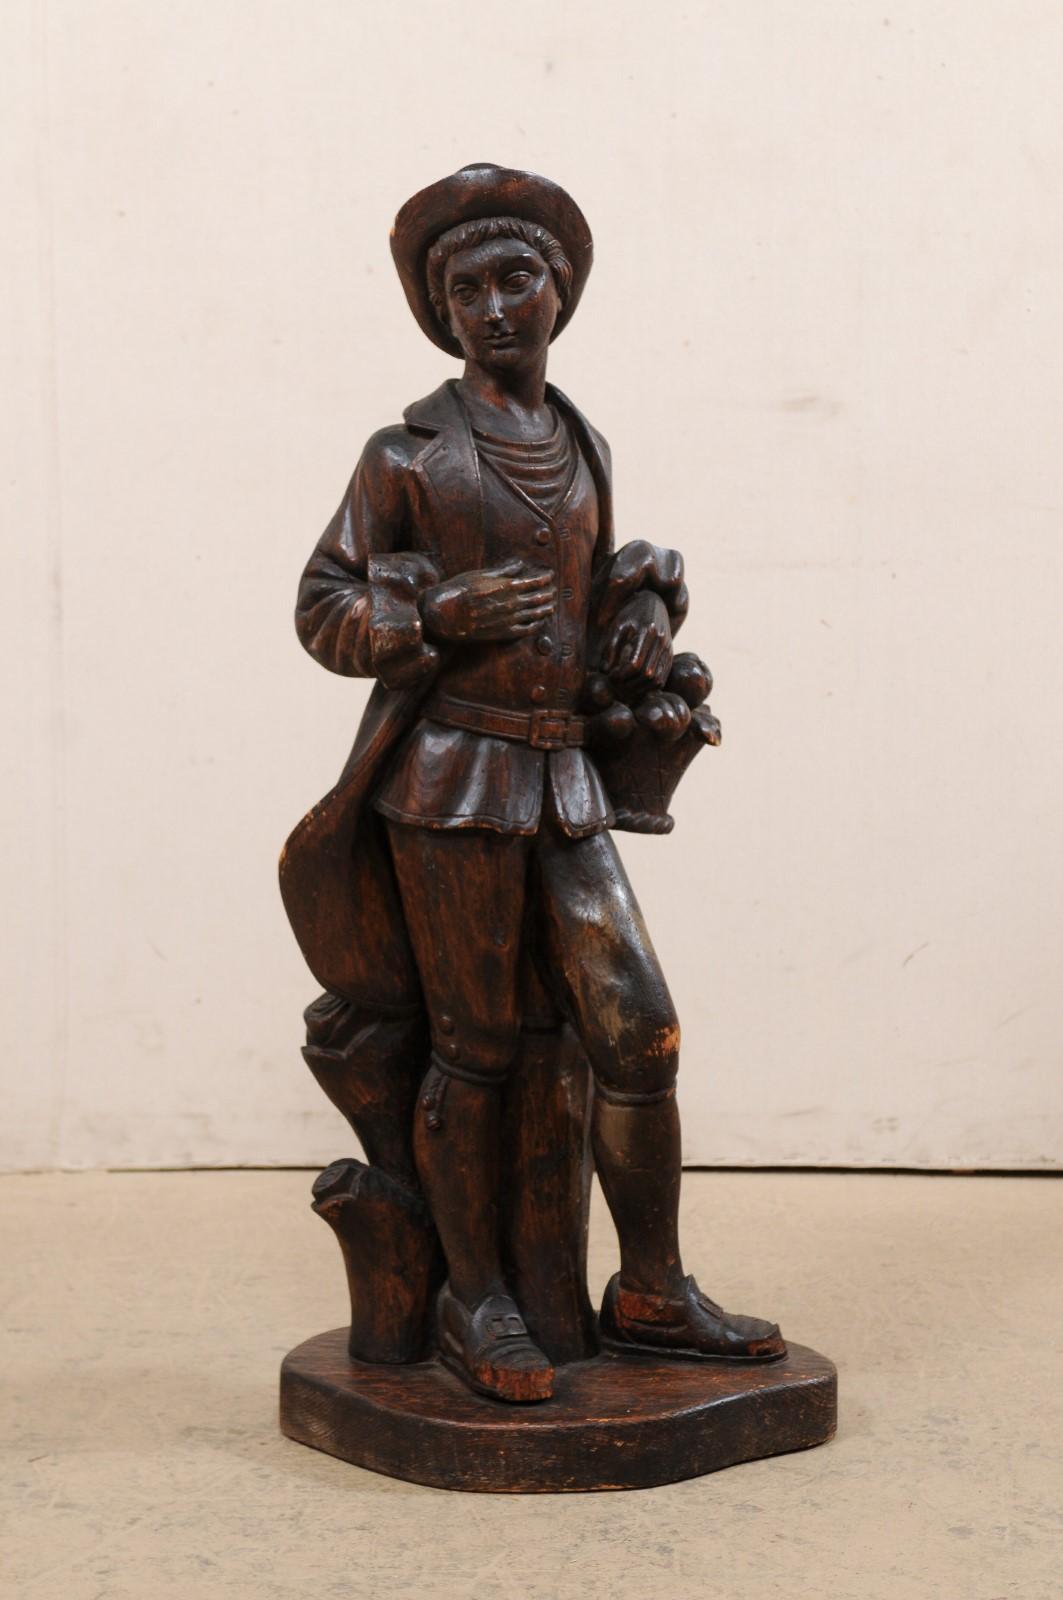 Eine italienische geschnitzte männliche Holzfigur aus der Mitte des 20. Diese alte geschnitzte Holzstatue aus Italien zeigt eine junge männliche Figur in der Kleidung des 18. Jahrhunderts (Habit à la franchise, bestehend aus Jacke, Hose und Weste),